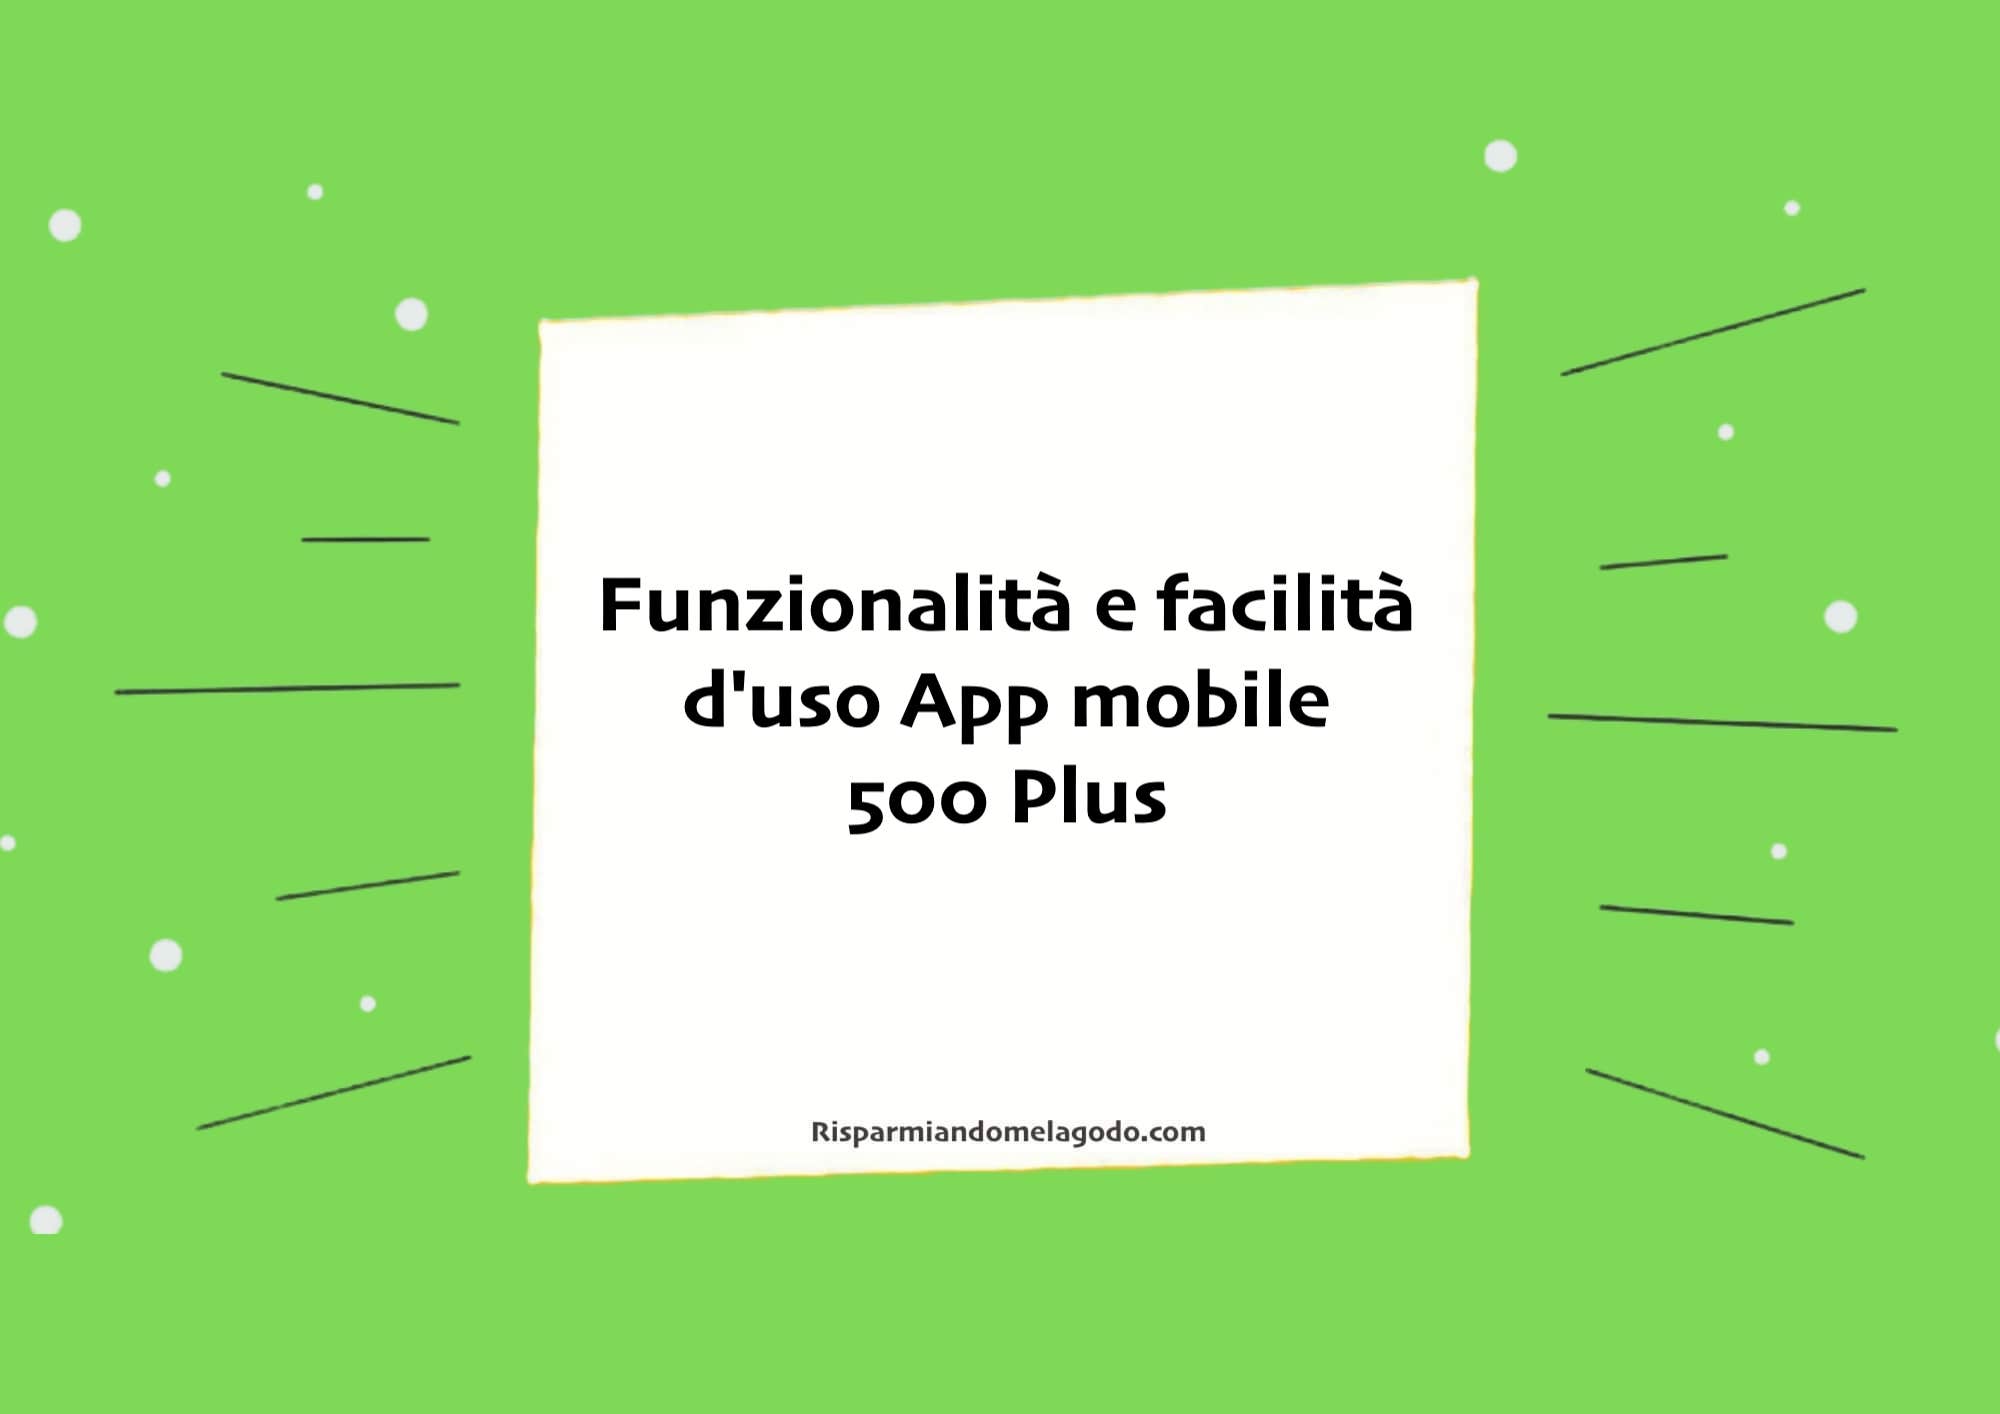 Funzionalità e facilità d'uso App mobile 500 Plus